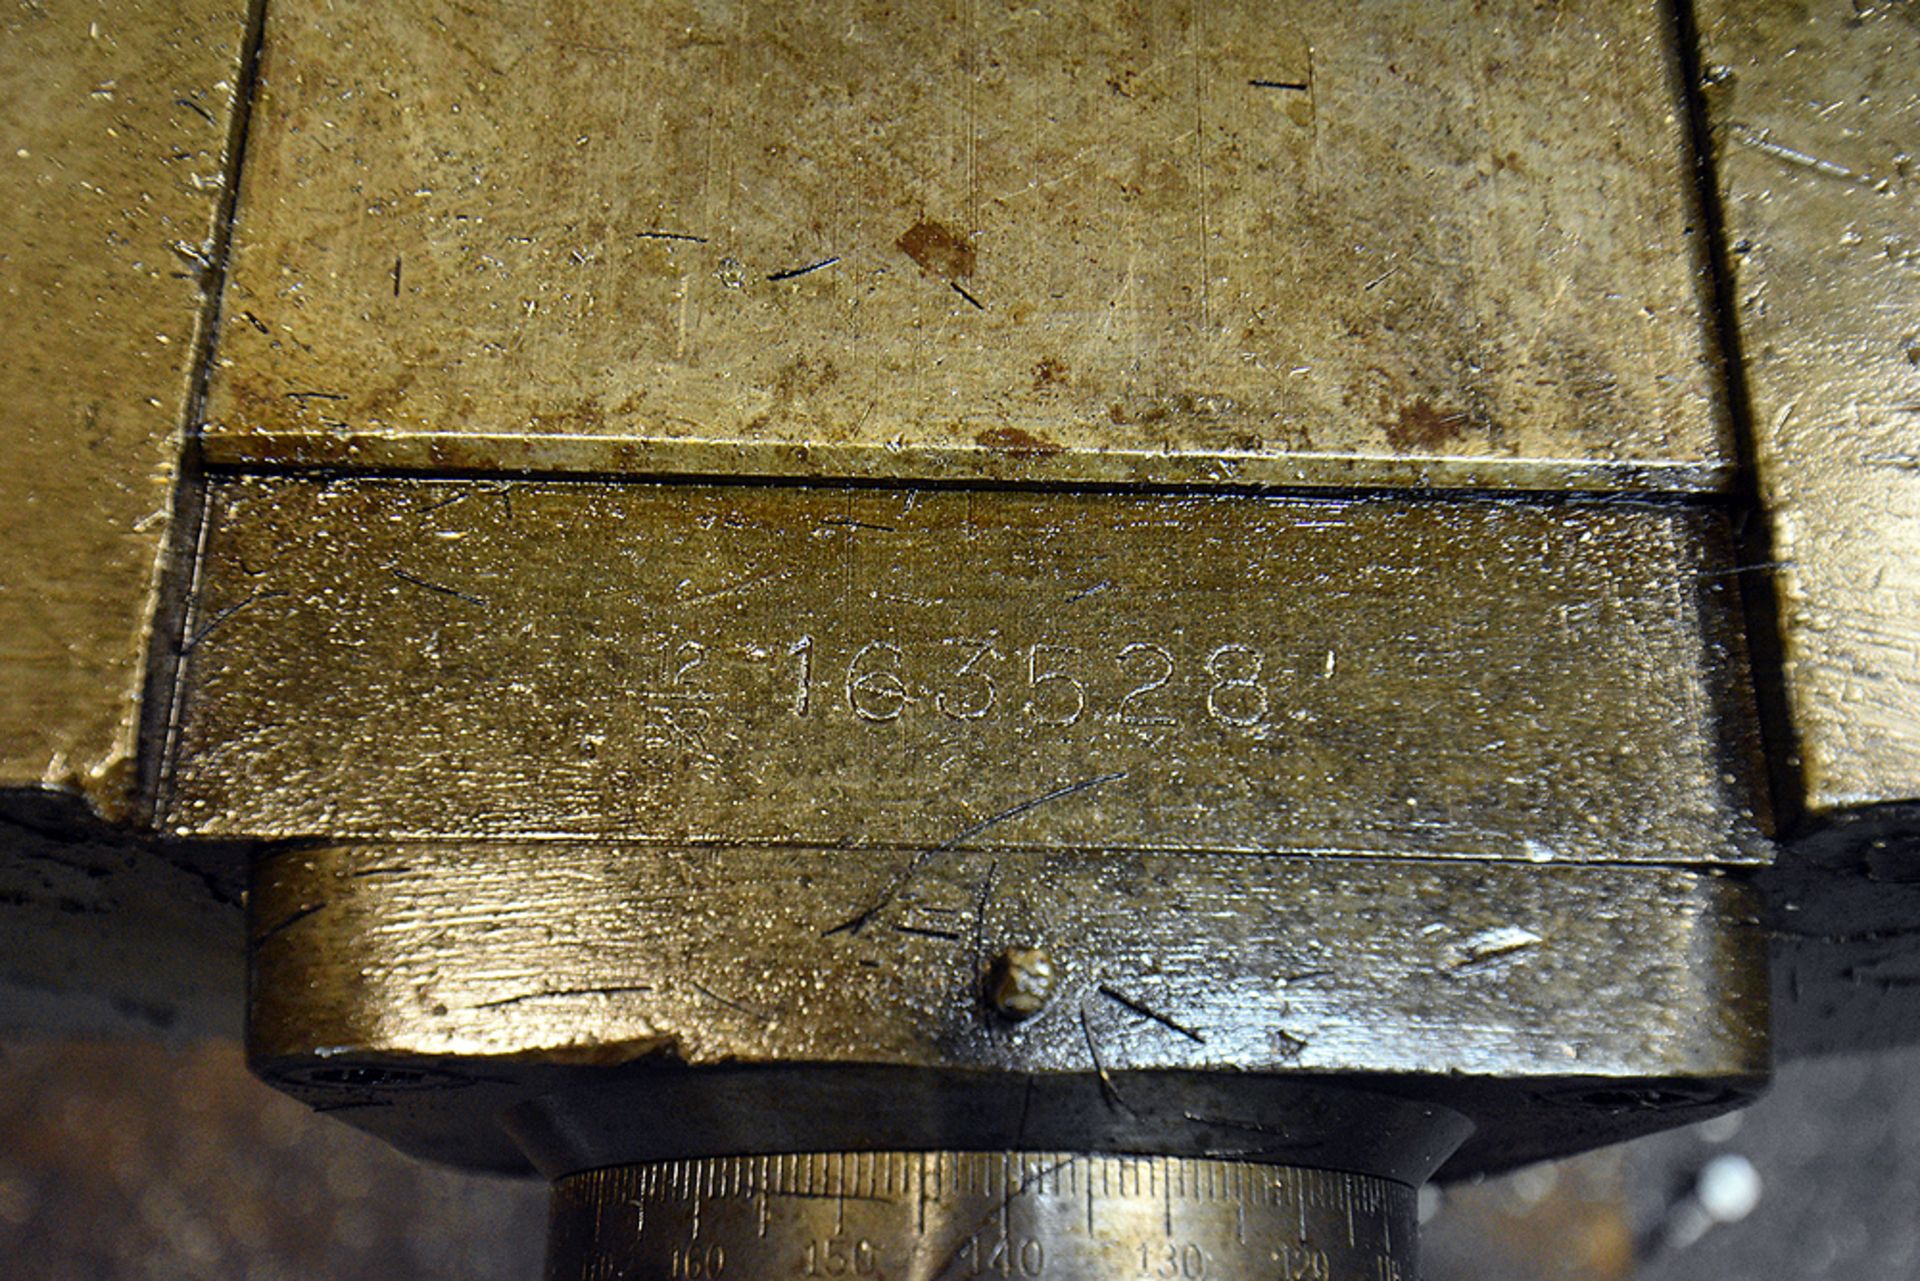 Bridgeport Vertical Milling Machine s/n 12BR 163528, 42" Table, 1HP Motor - Image 5 of 5